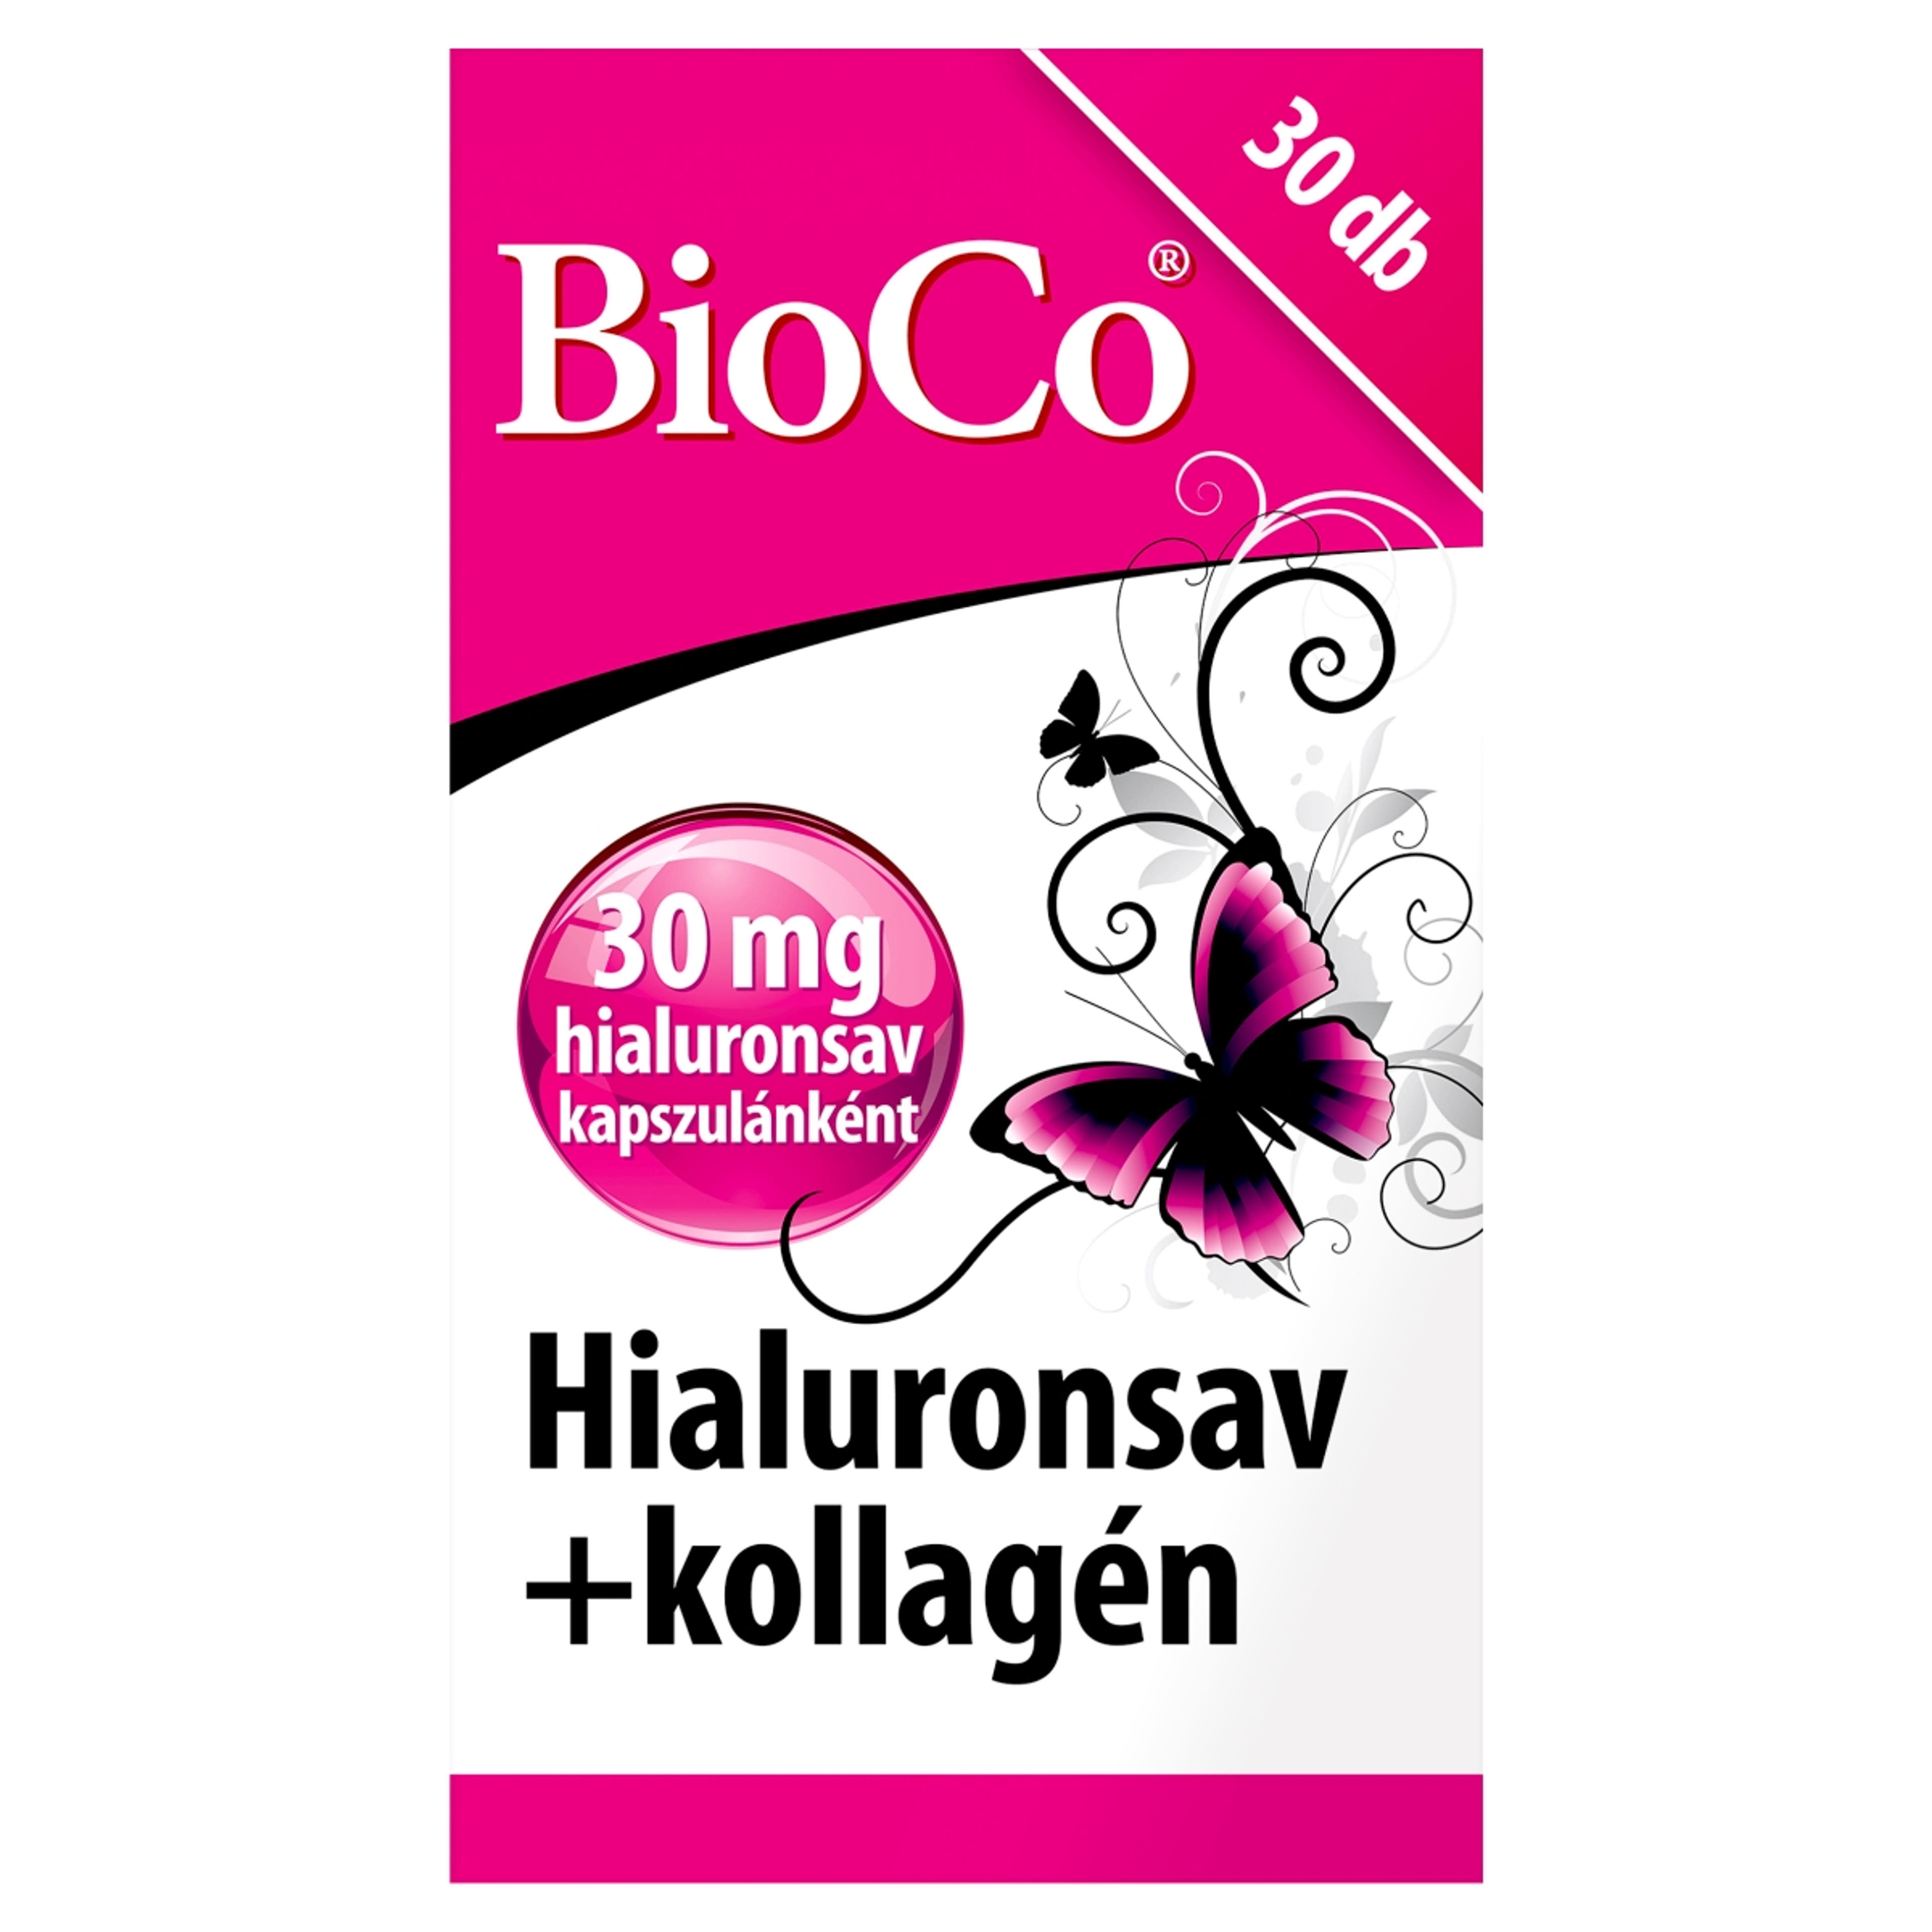 Bioco Hialuronsav+Kollagén étrendkiegészítő tabletta - 30 db